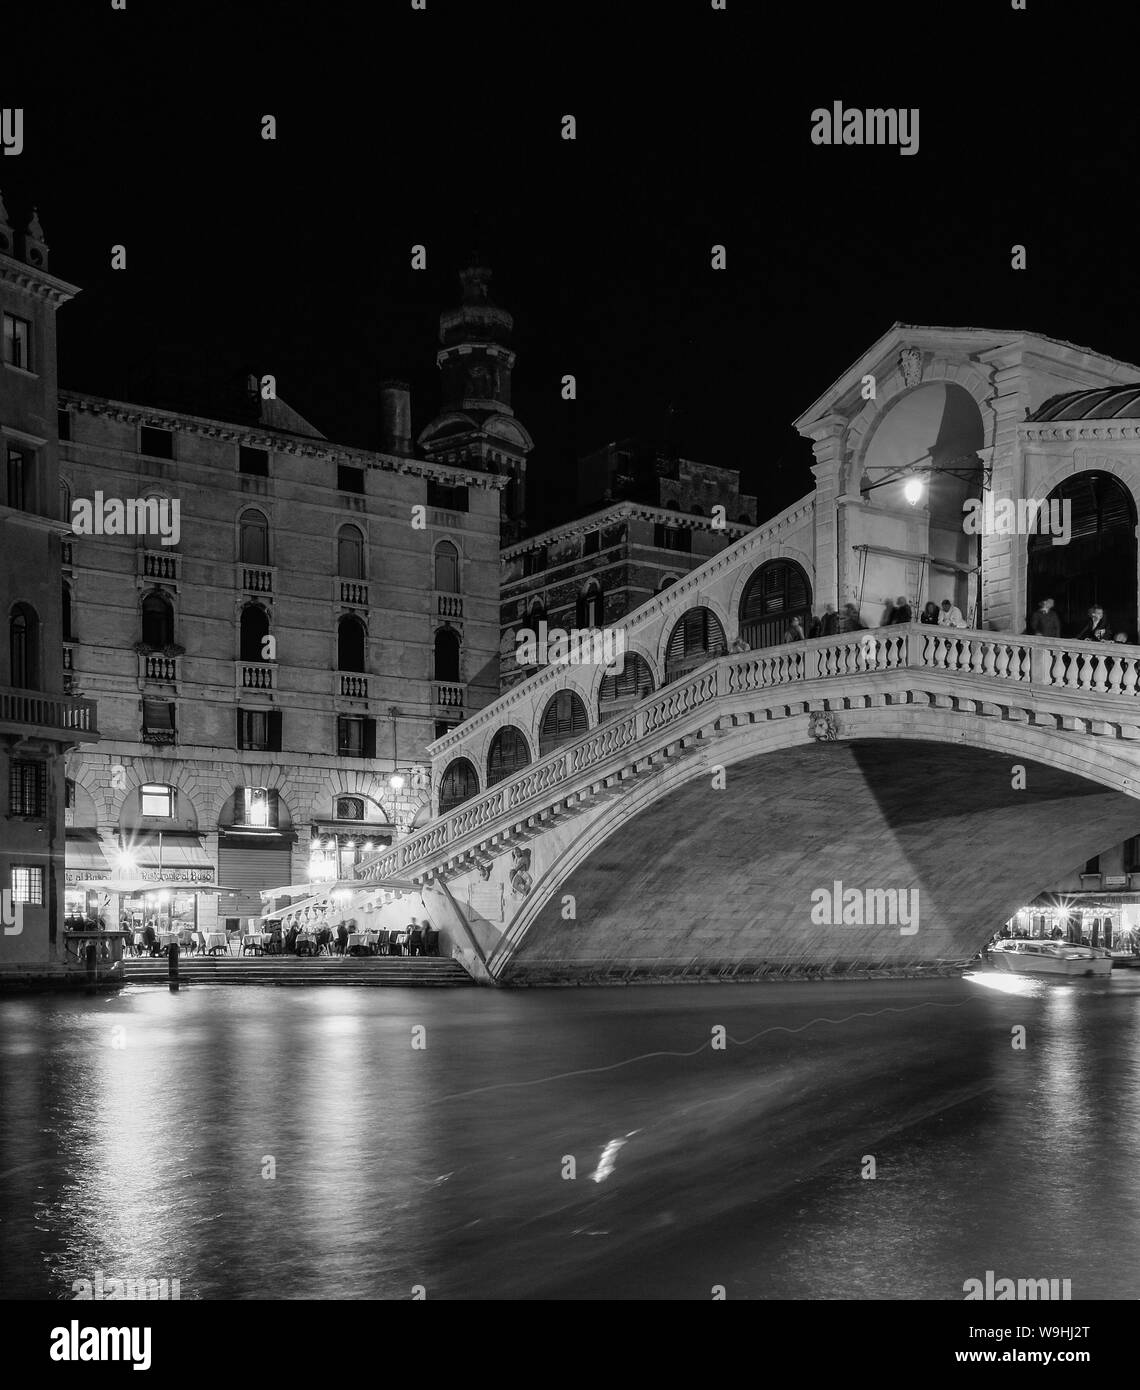 the Ponte di Rialto or Rialto Bridge at night, Venice Stock Photo